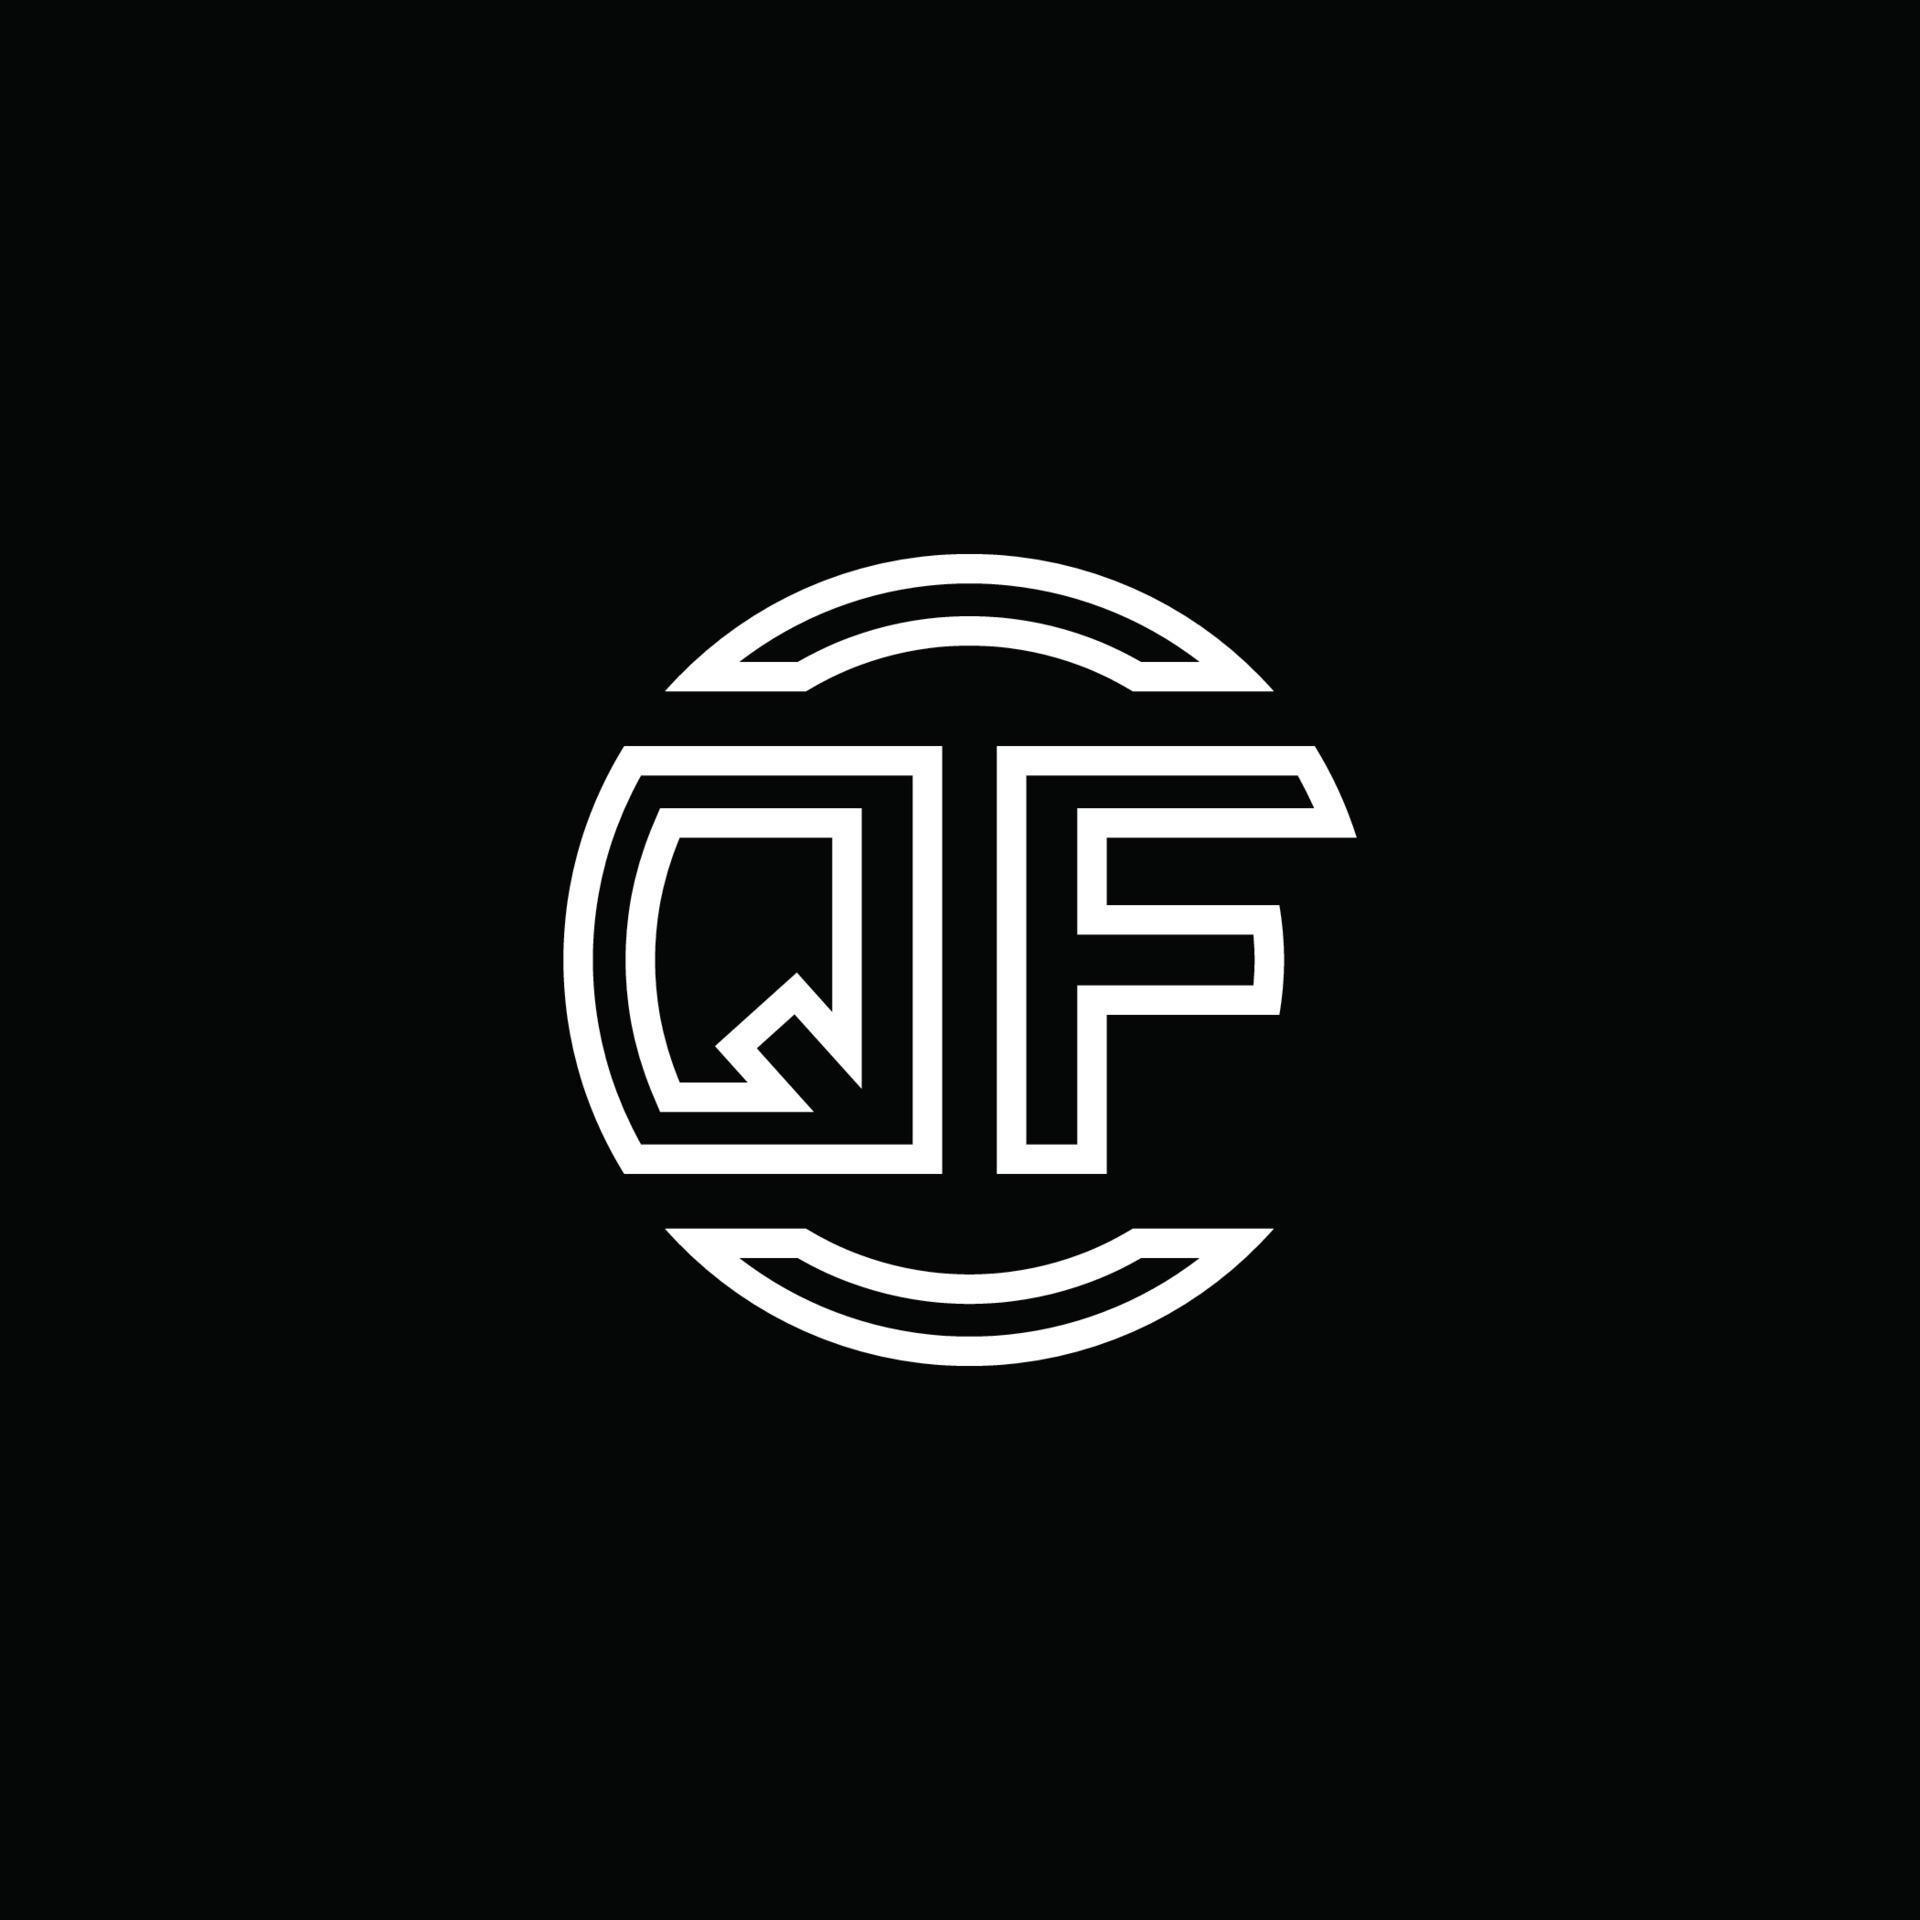 Monograma del logotipo de qf con plantilla de diseño redondeado de círculo de espacio negativo vector